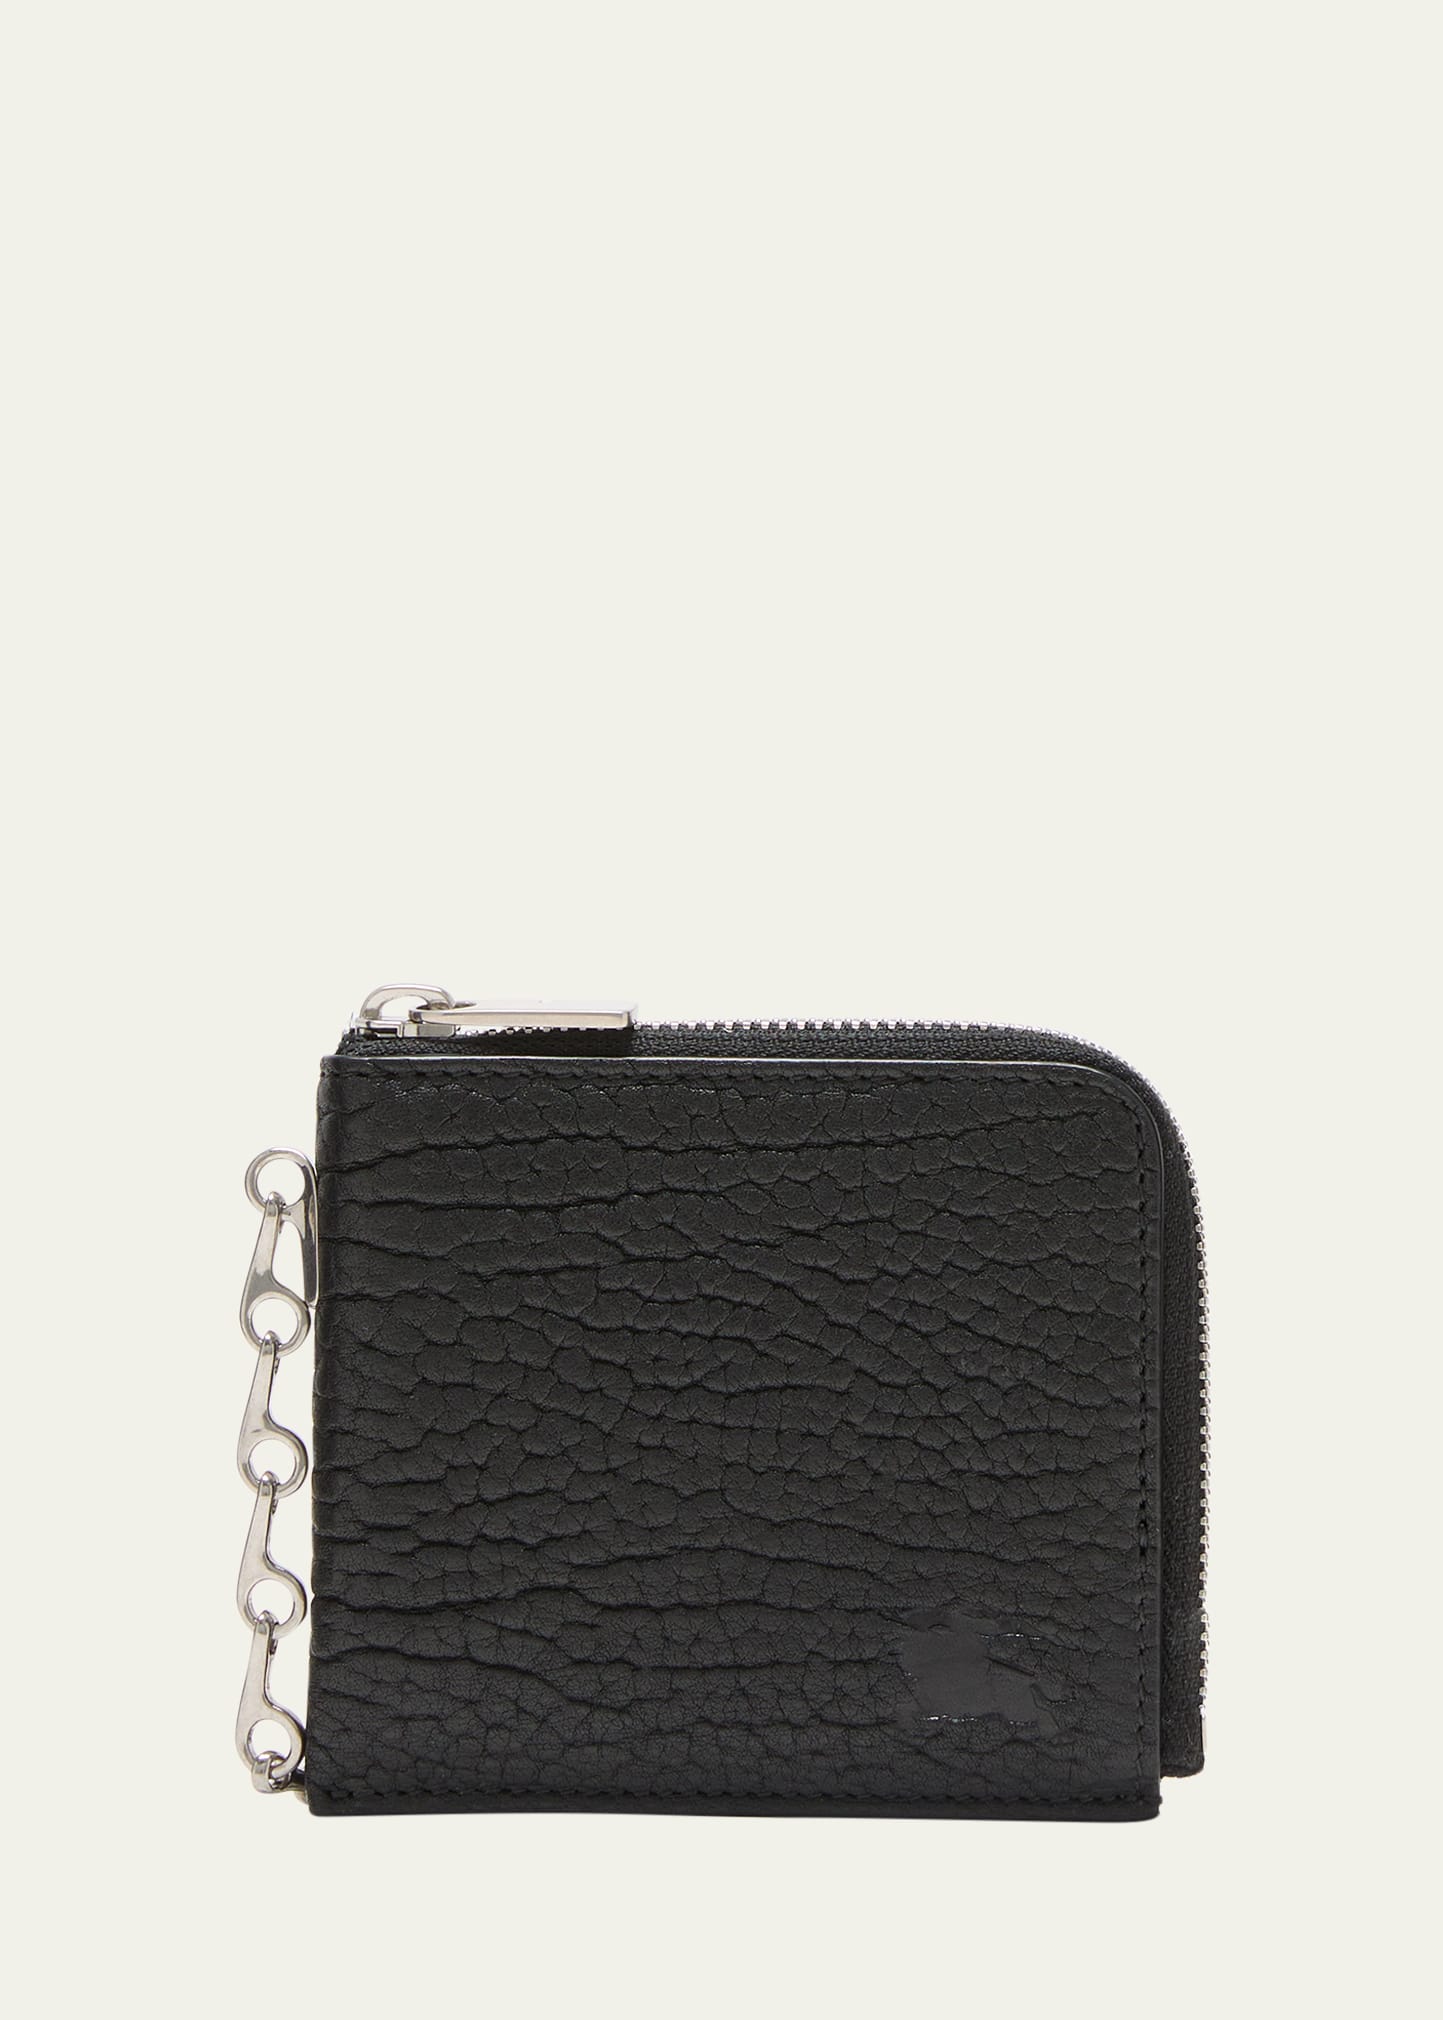 Burberry Men's Leather B Chain Zip Wallet In Black